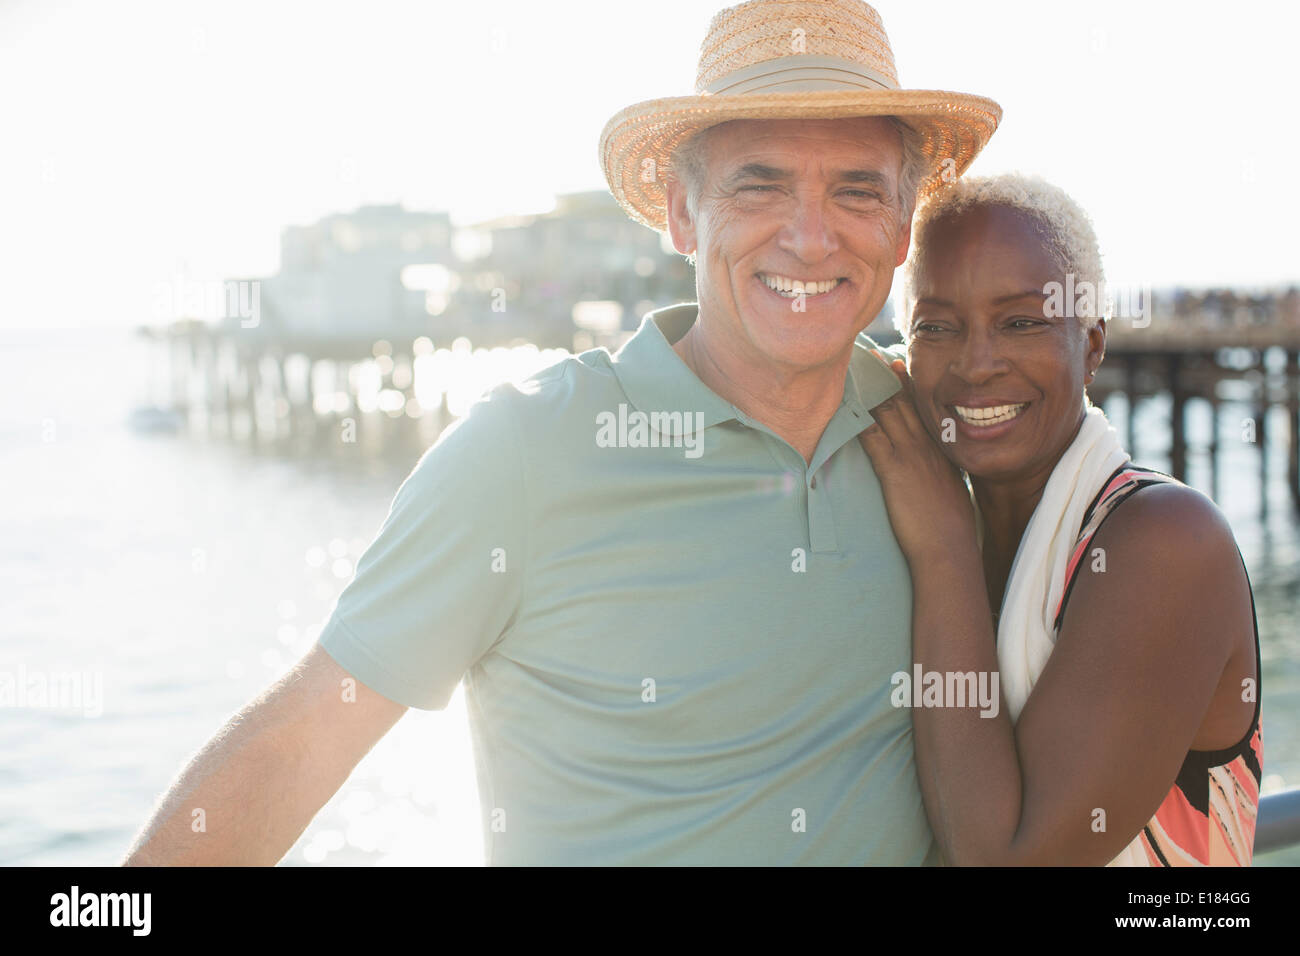 Portrait of happy senior couple on beach Stock Photo